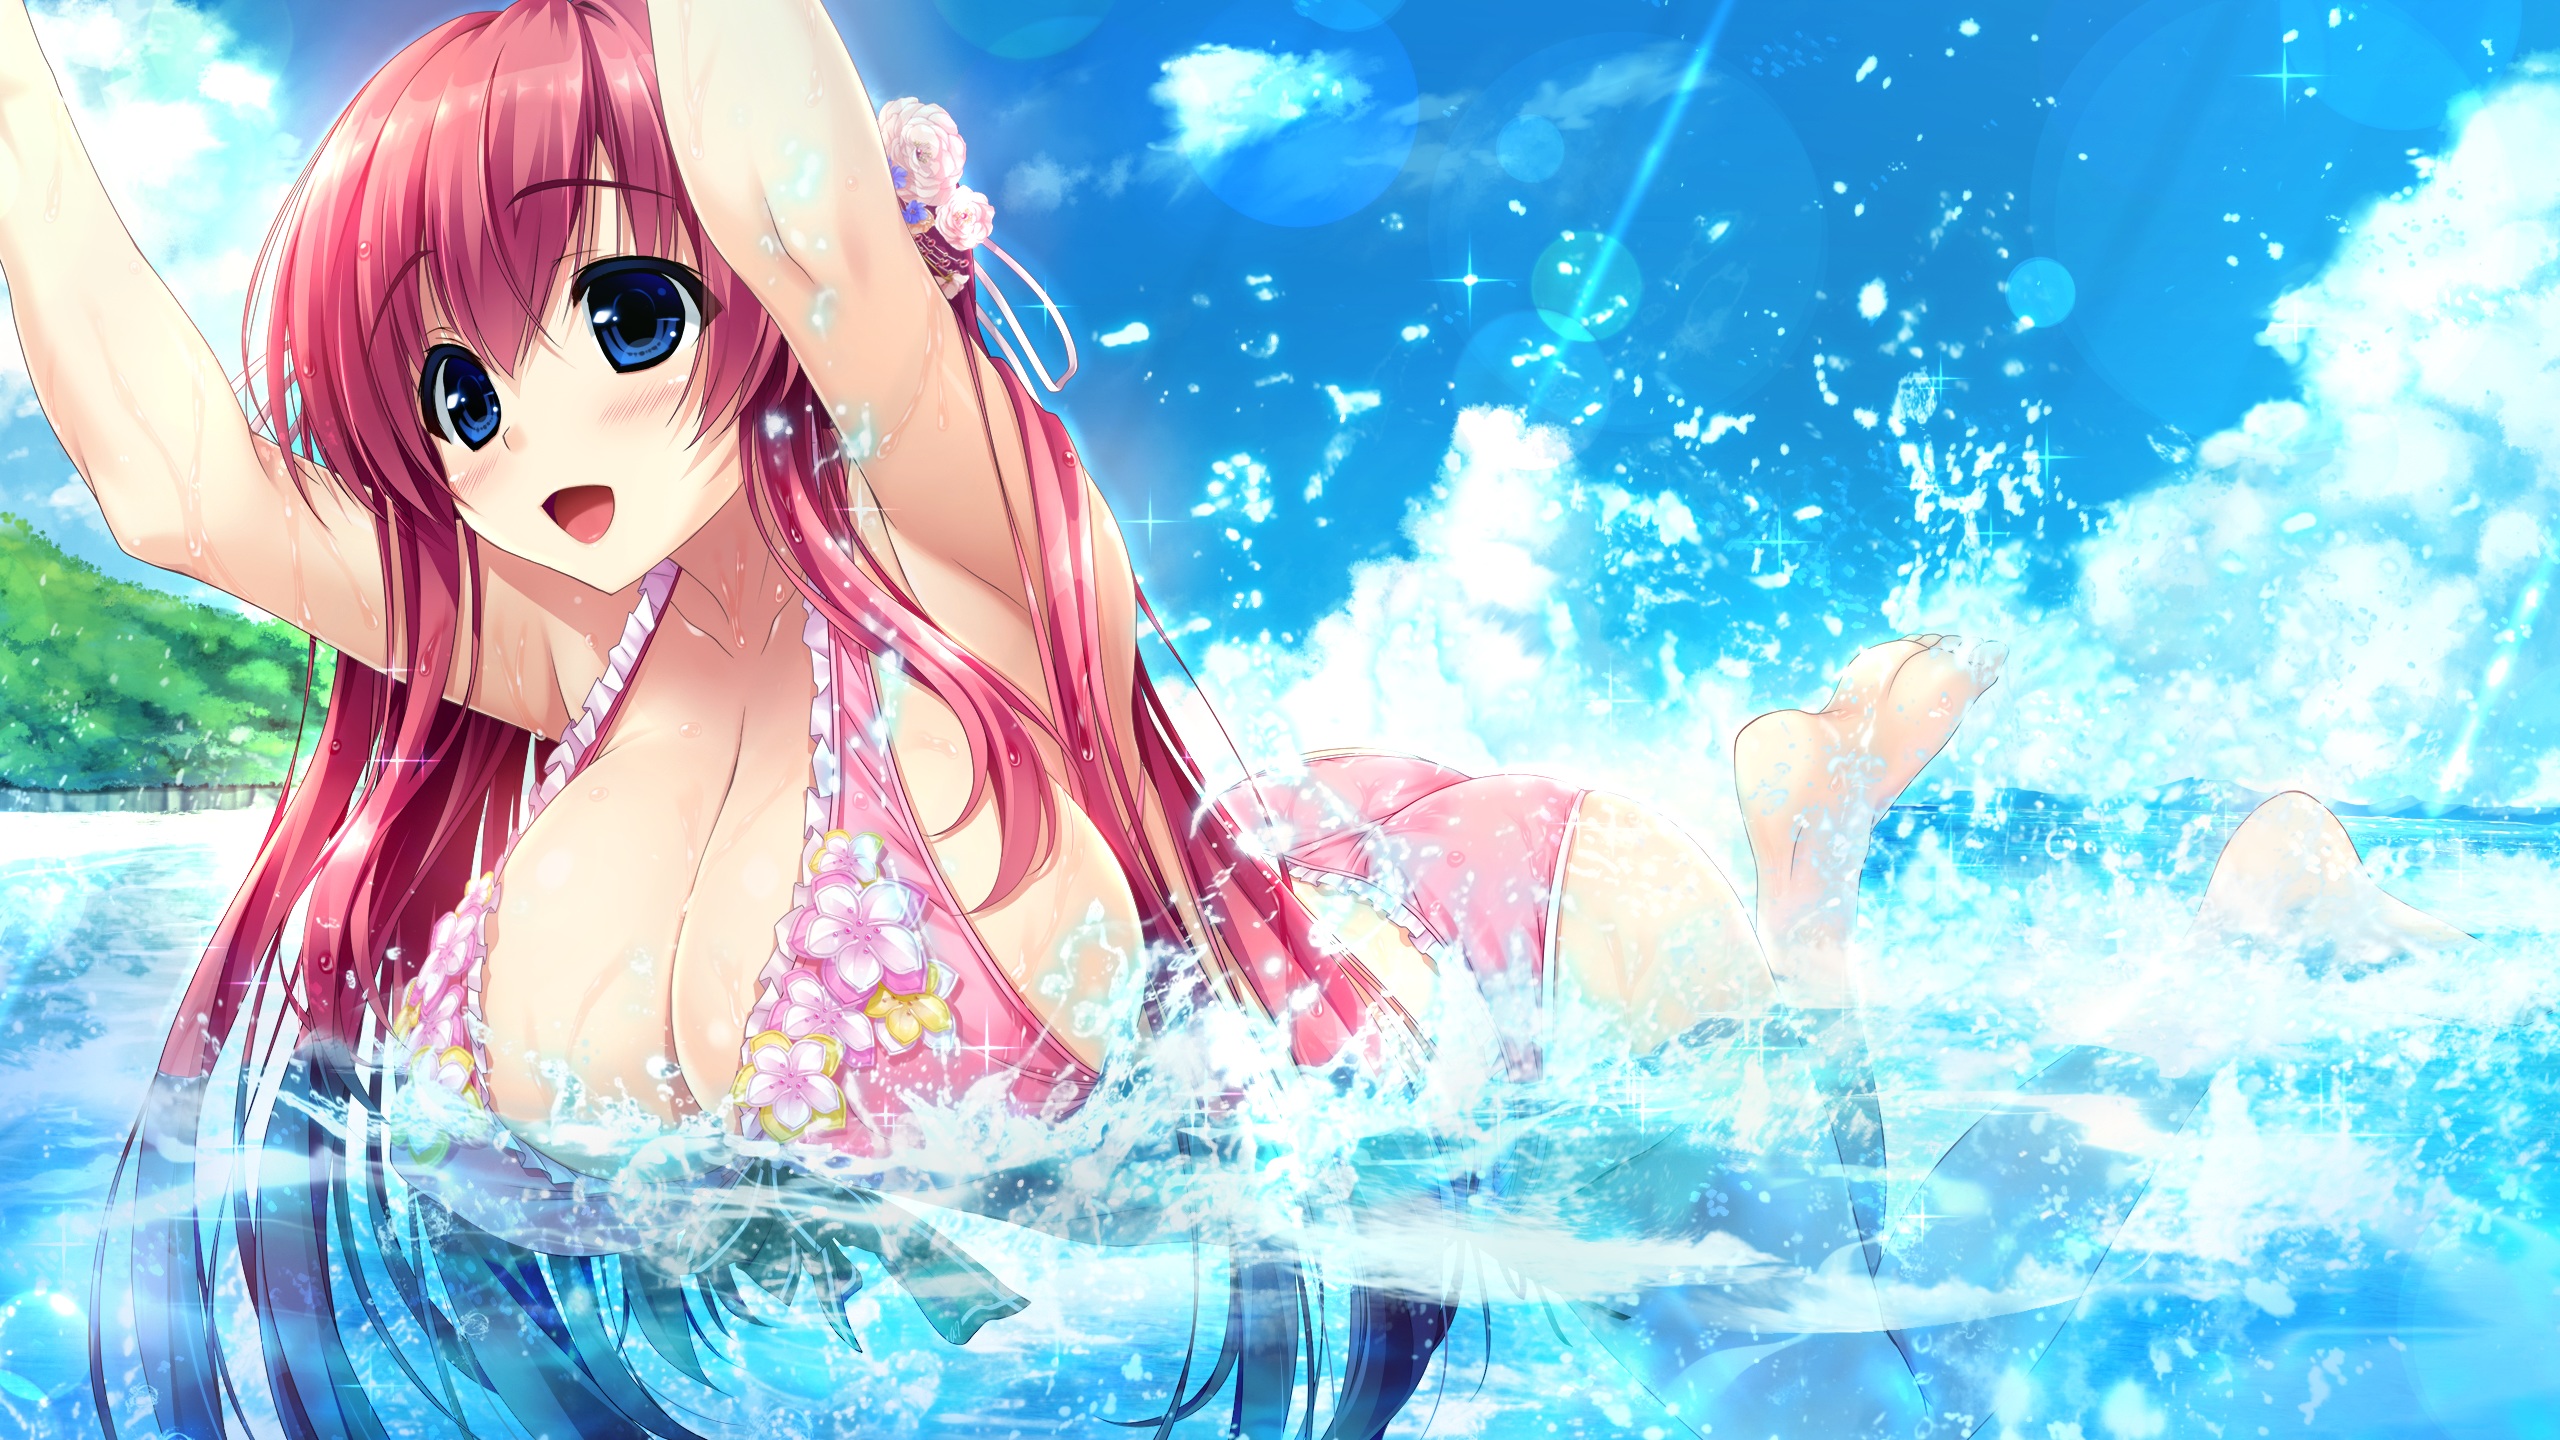 Anime 2560x1440 Harugasaki Kanau Haruru Minamo ni! blue eyes bikini cleavage Shintarou armpits pink hair swimming water drops pink bikini clouds